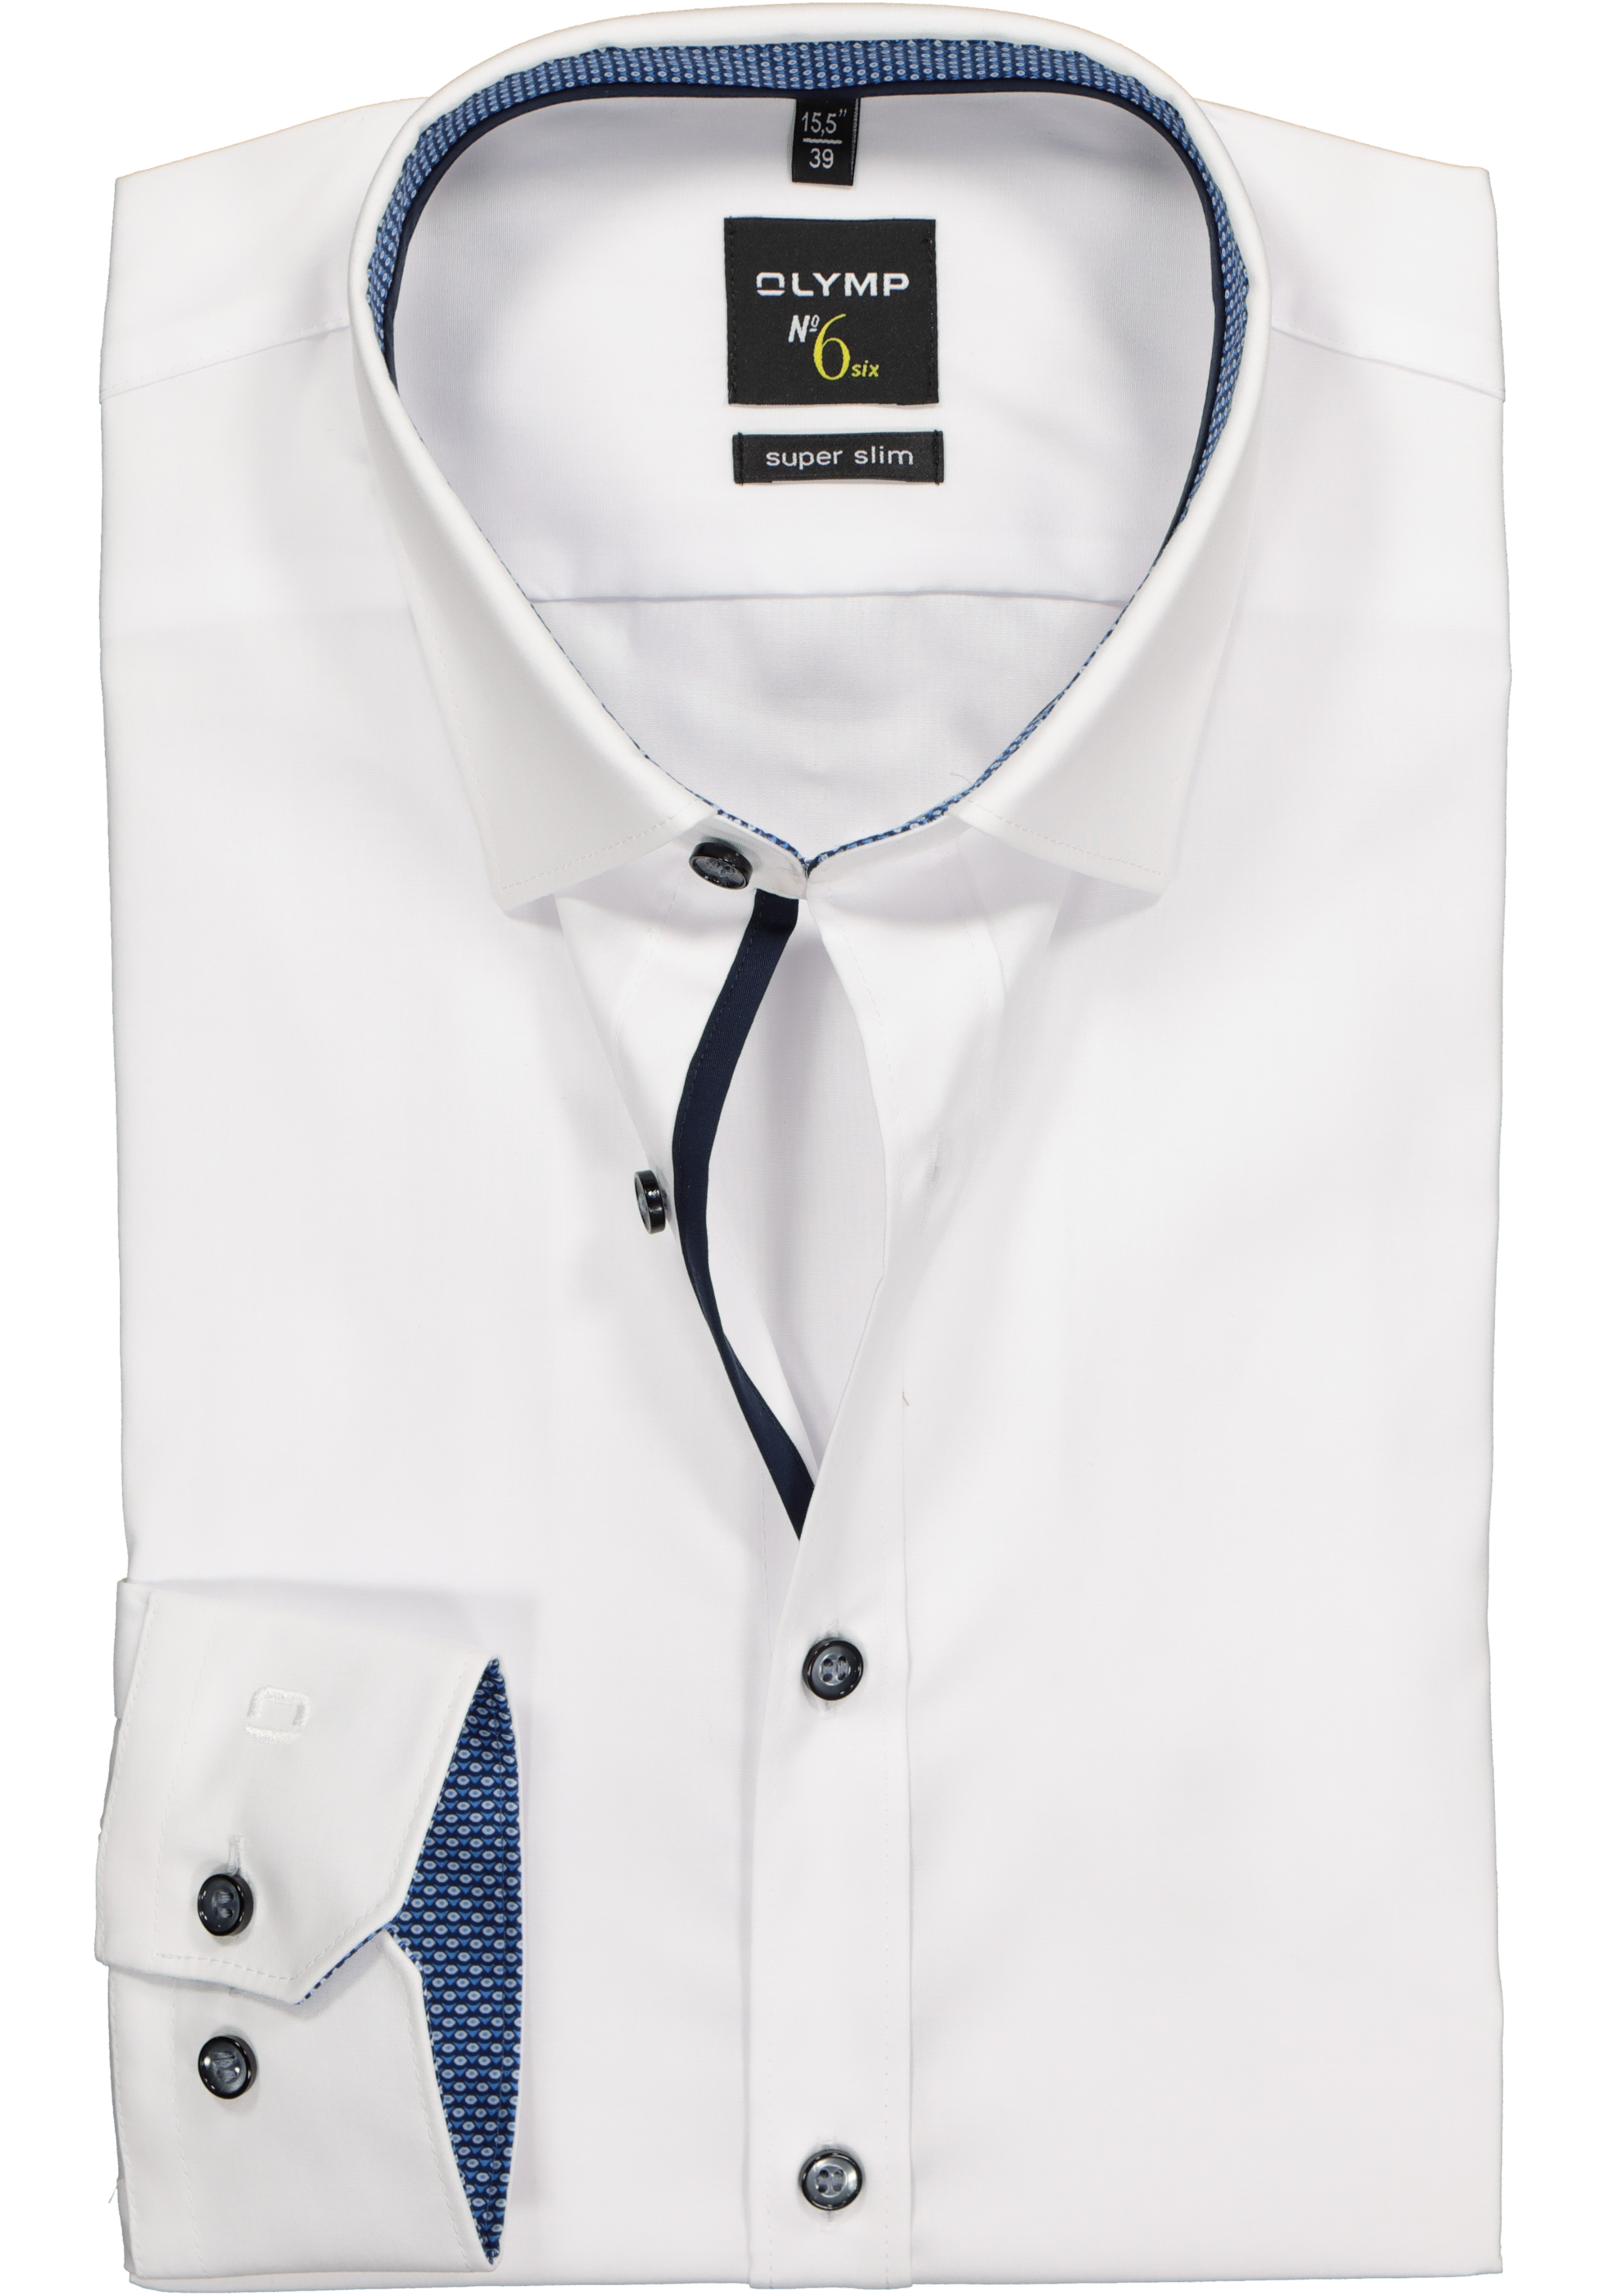 voorspelling Referendum Uitleg OLYMP No. Six super slim fit overhemd, wit (blauw contrast) - Shop de  nieuwste voorjaarsmode